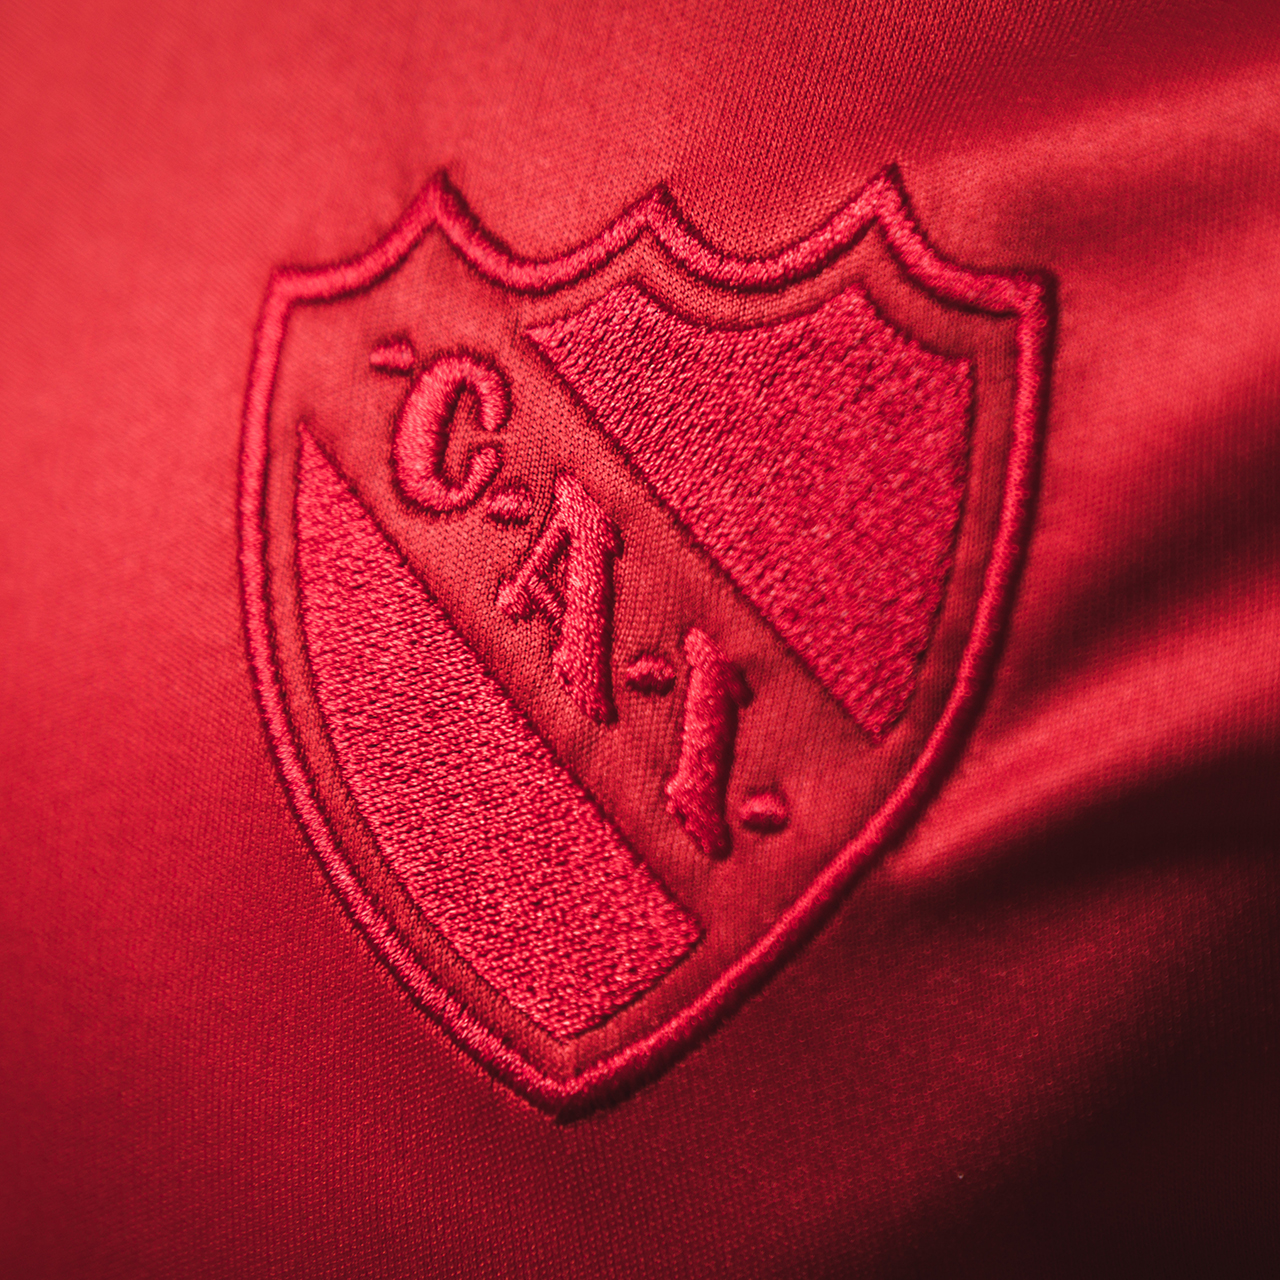 Camiseta PUMA de Independiente 2018 Todo Rojo